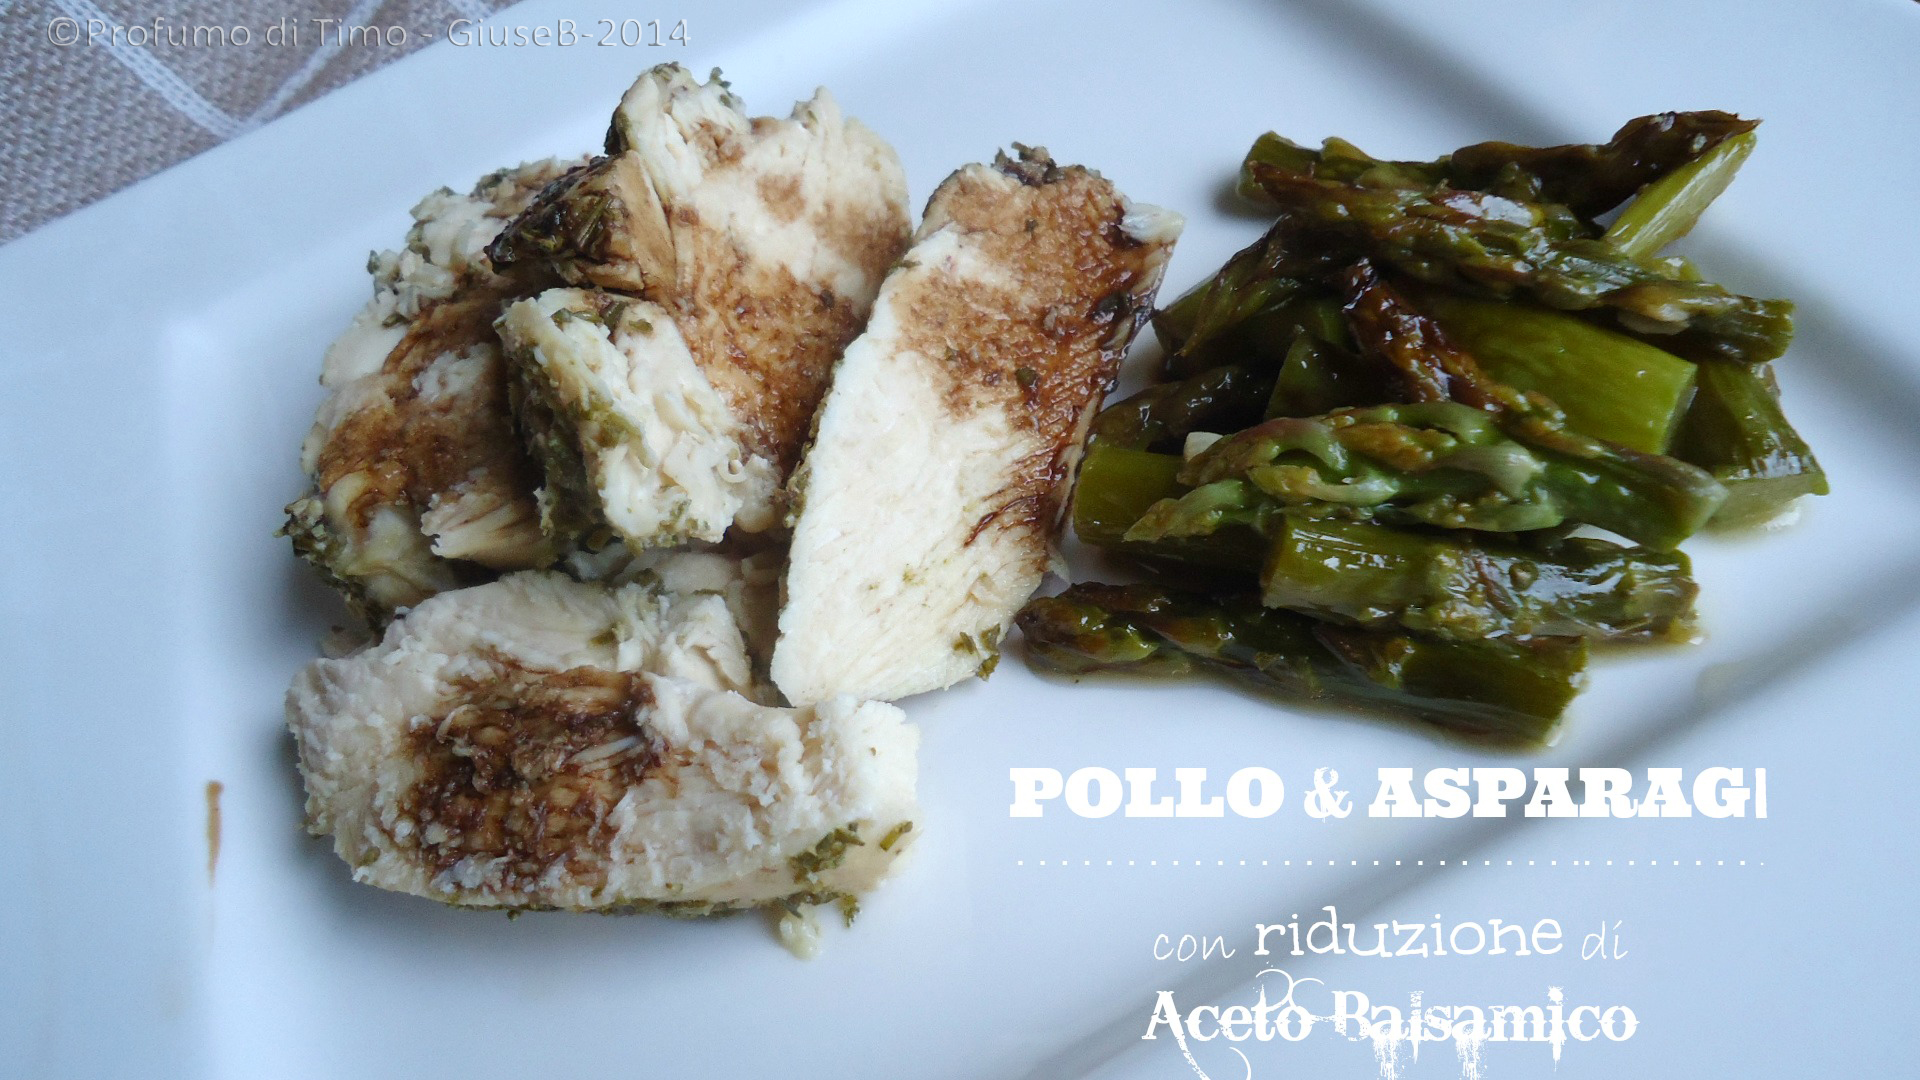 Pollo & Asparagi con riduzione di Aceto Balsamico